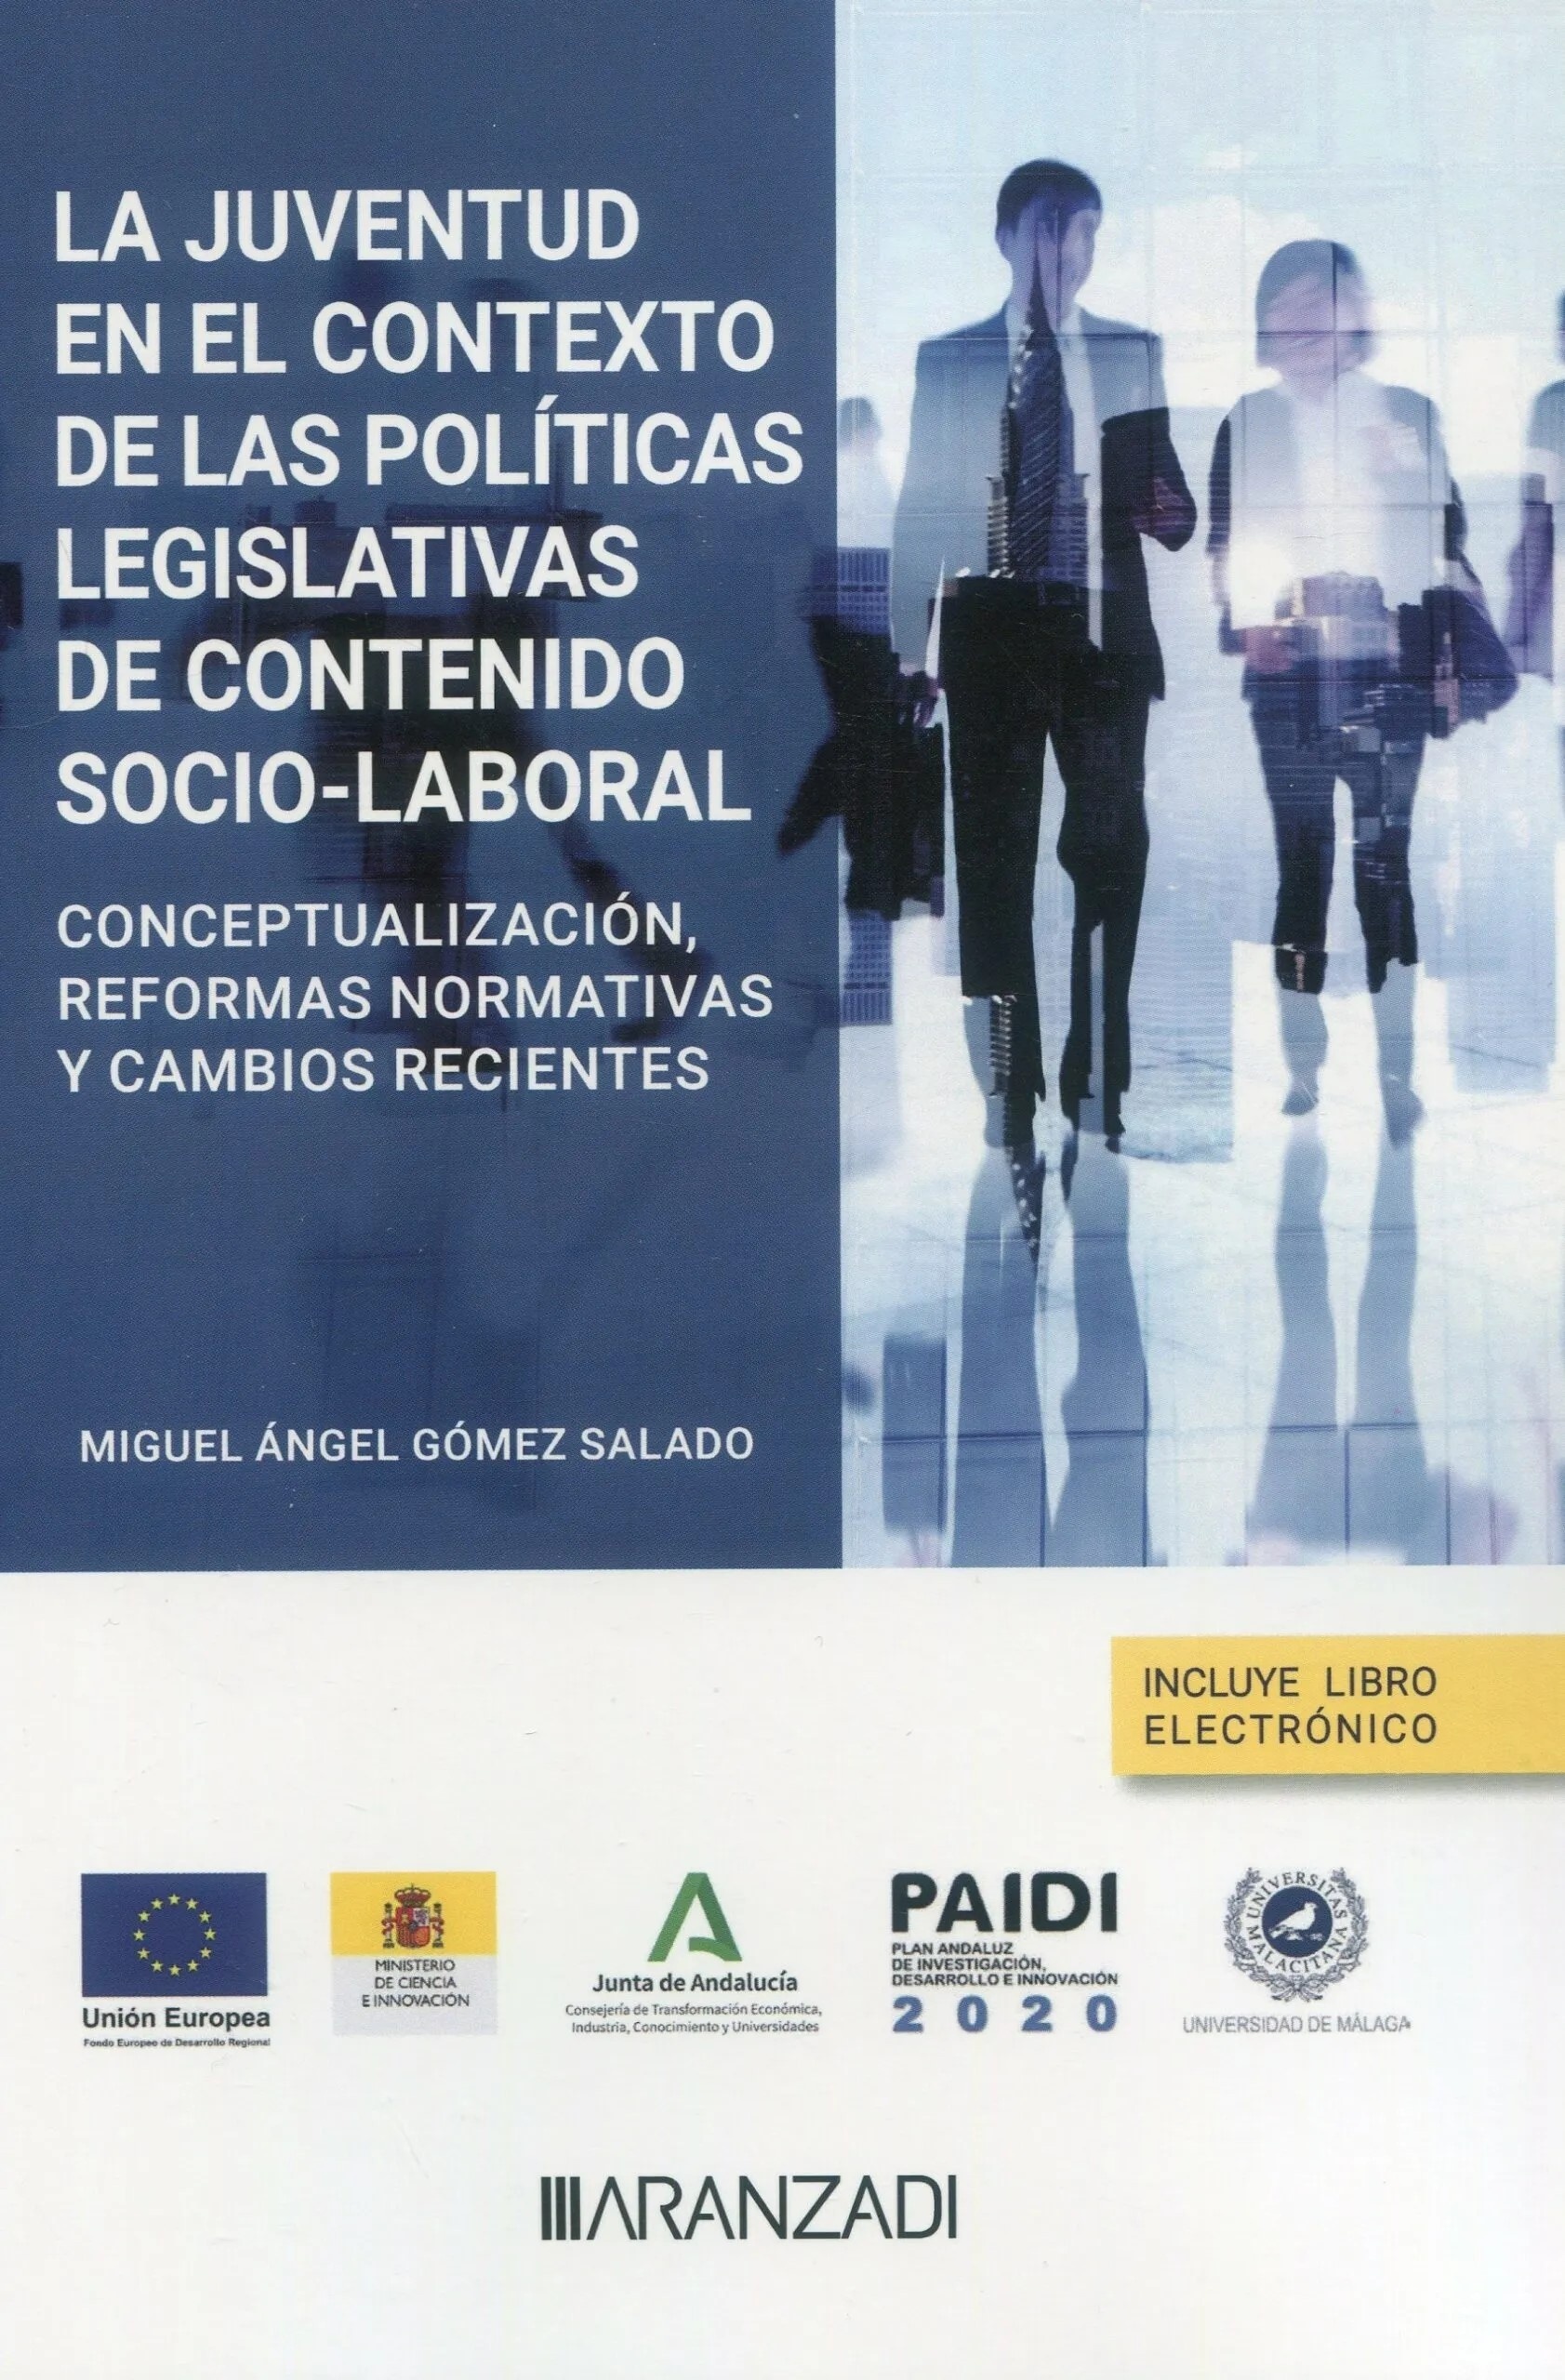 Juventud en el contexto de las políticas legislativas de contenido socio-laboral: "Conceptualización, reformas normativas y cambios recientes"